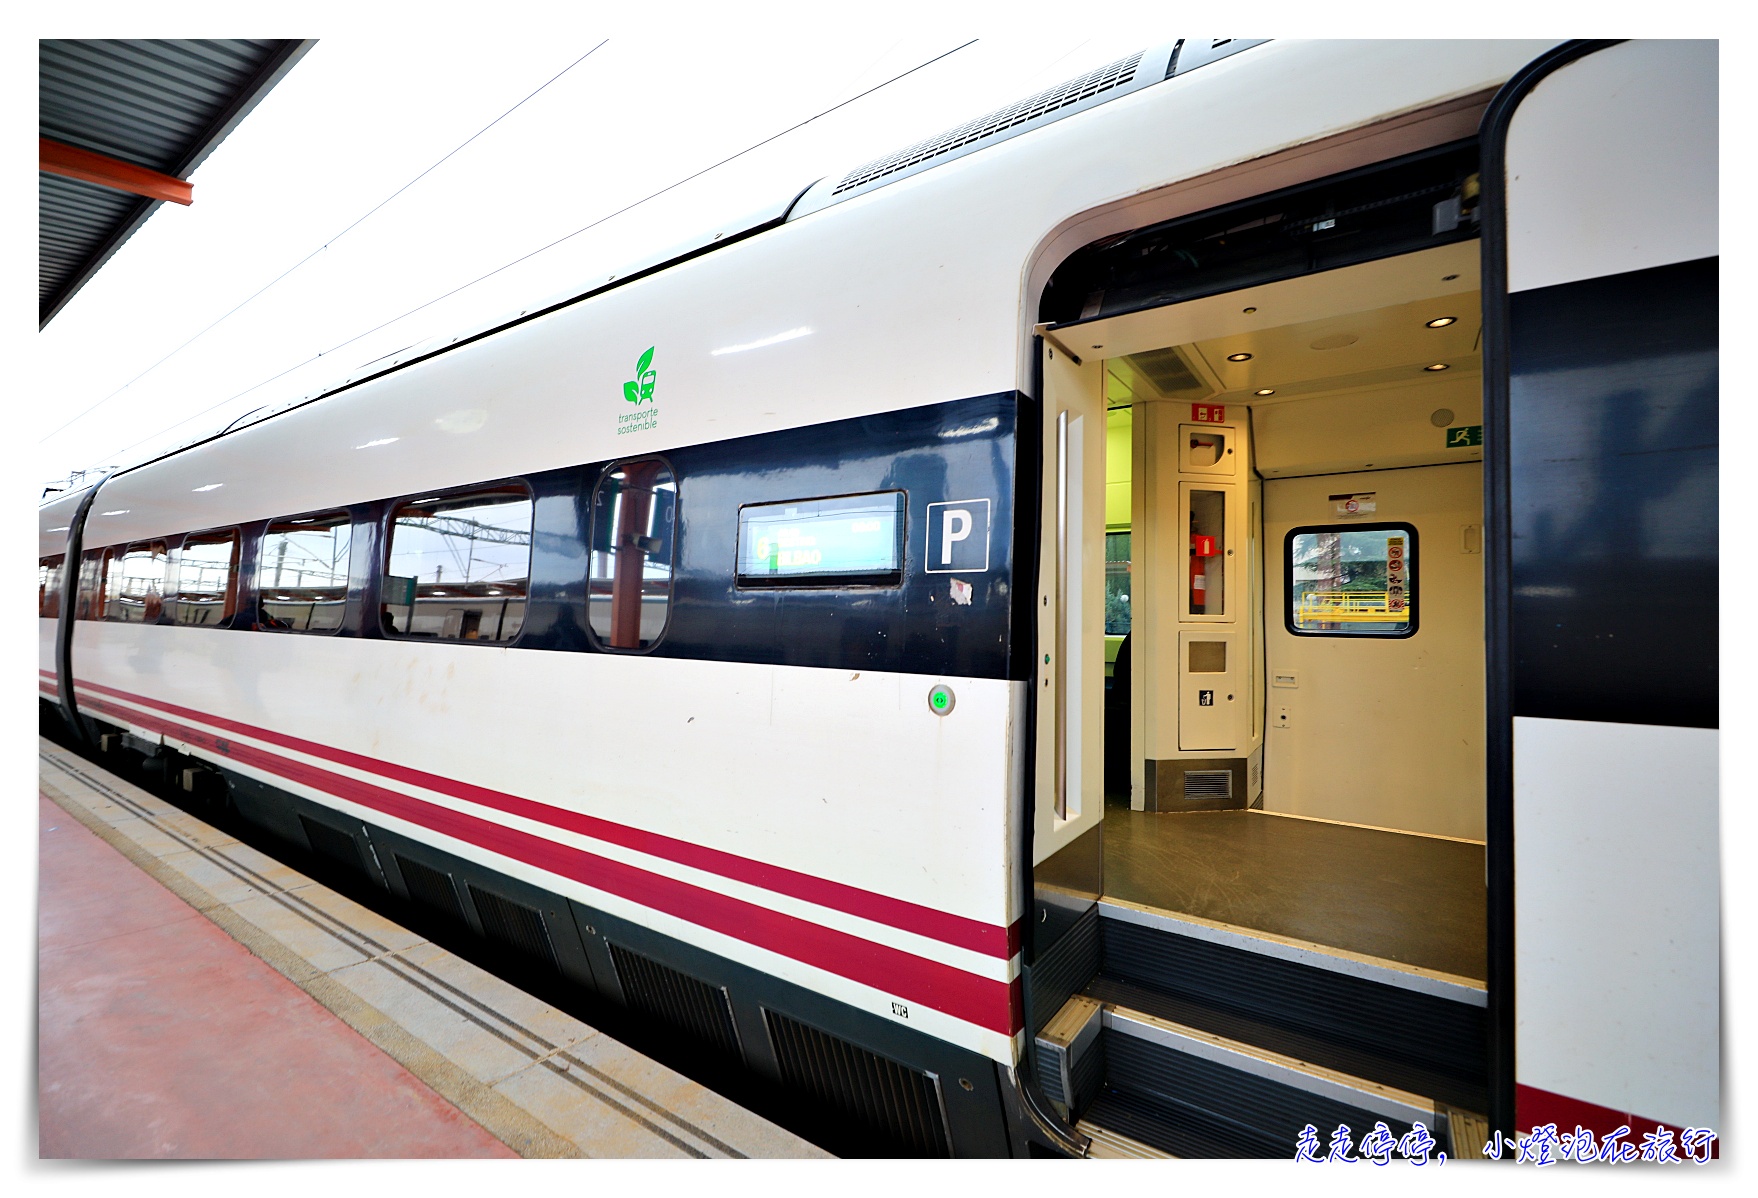 馬德里到畢爾包火車｜西班牙國鐵搭乘體驗紀錄